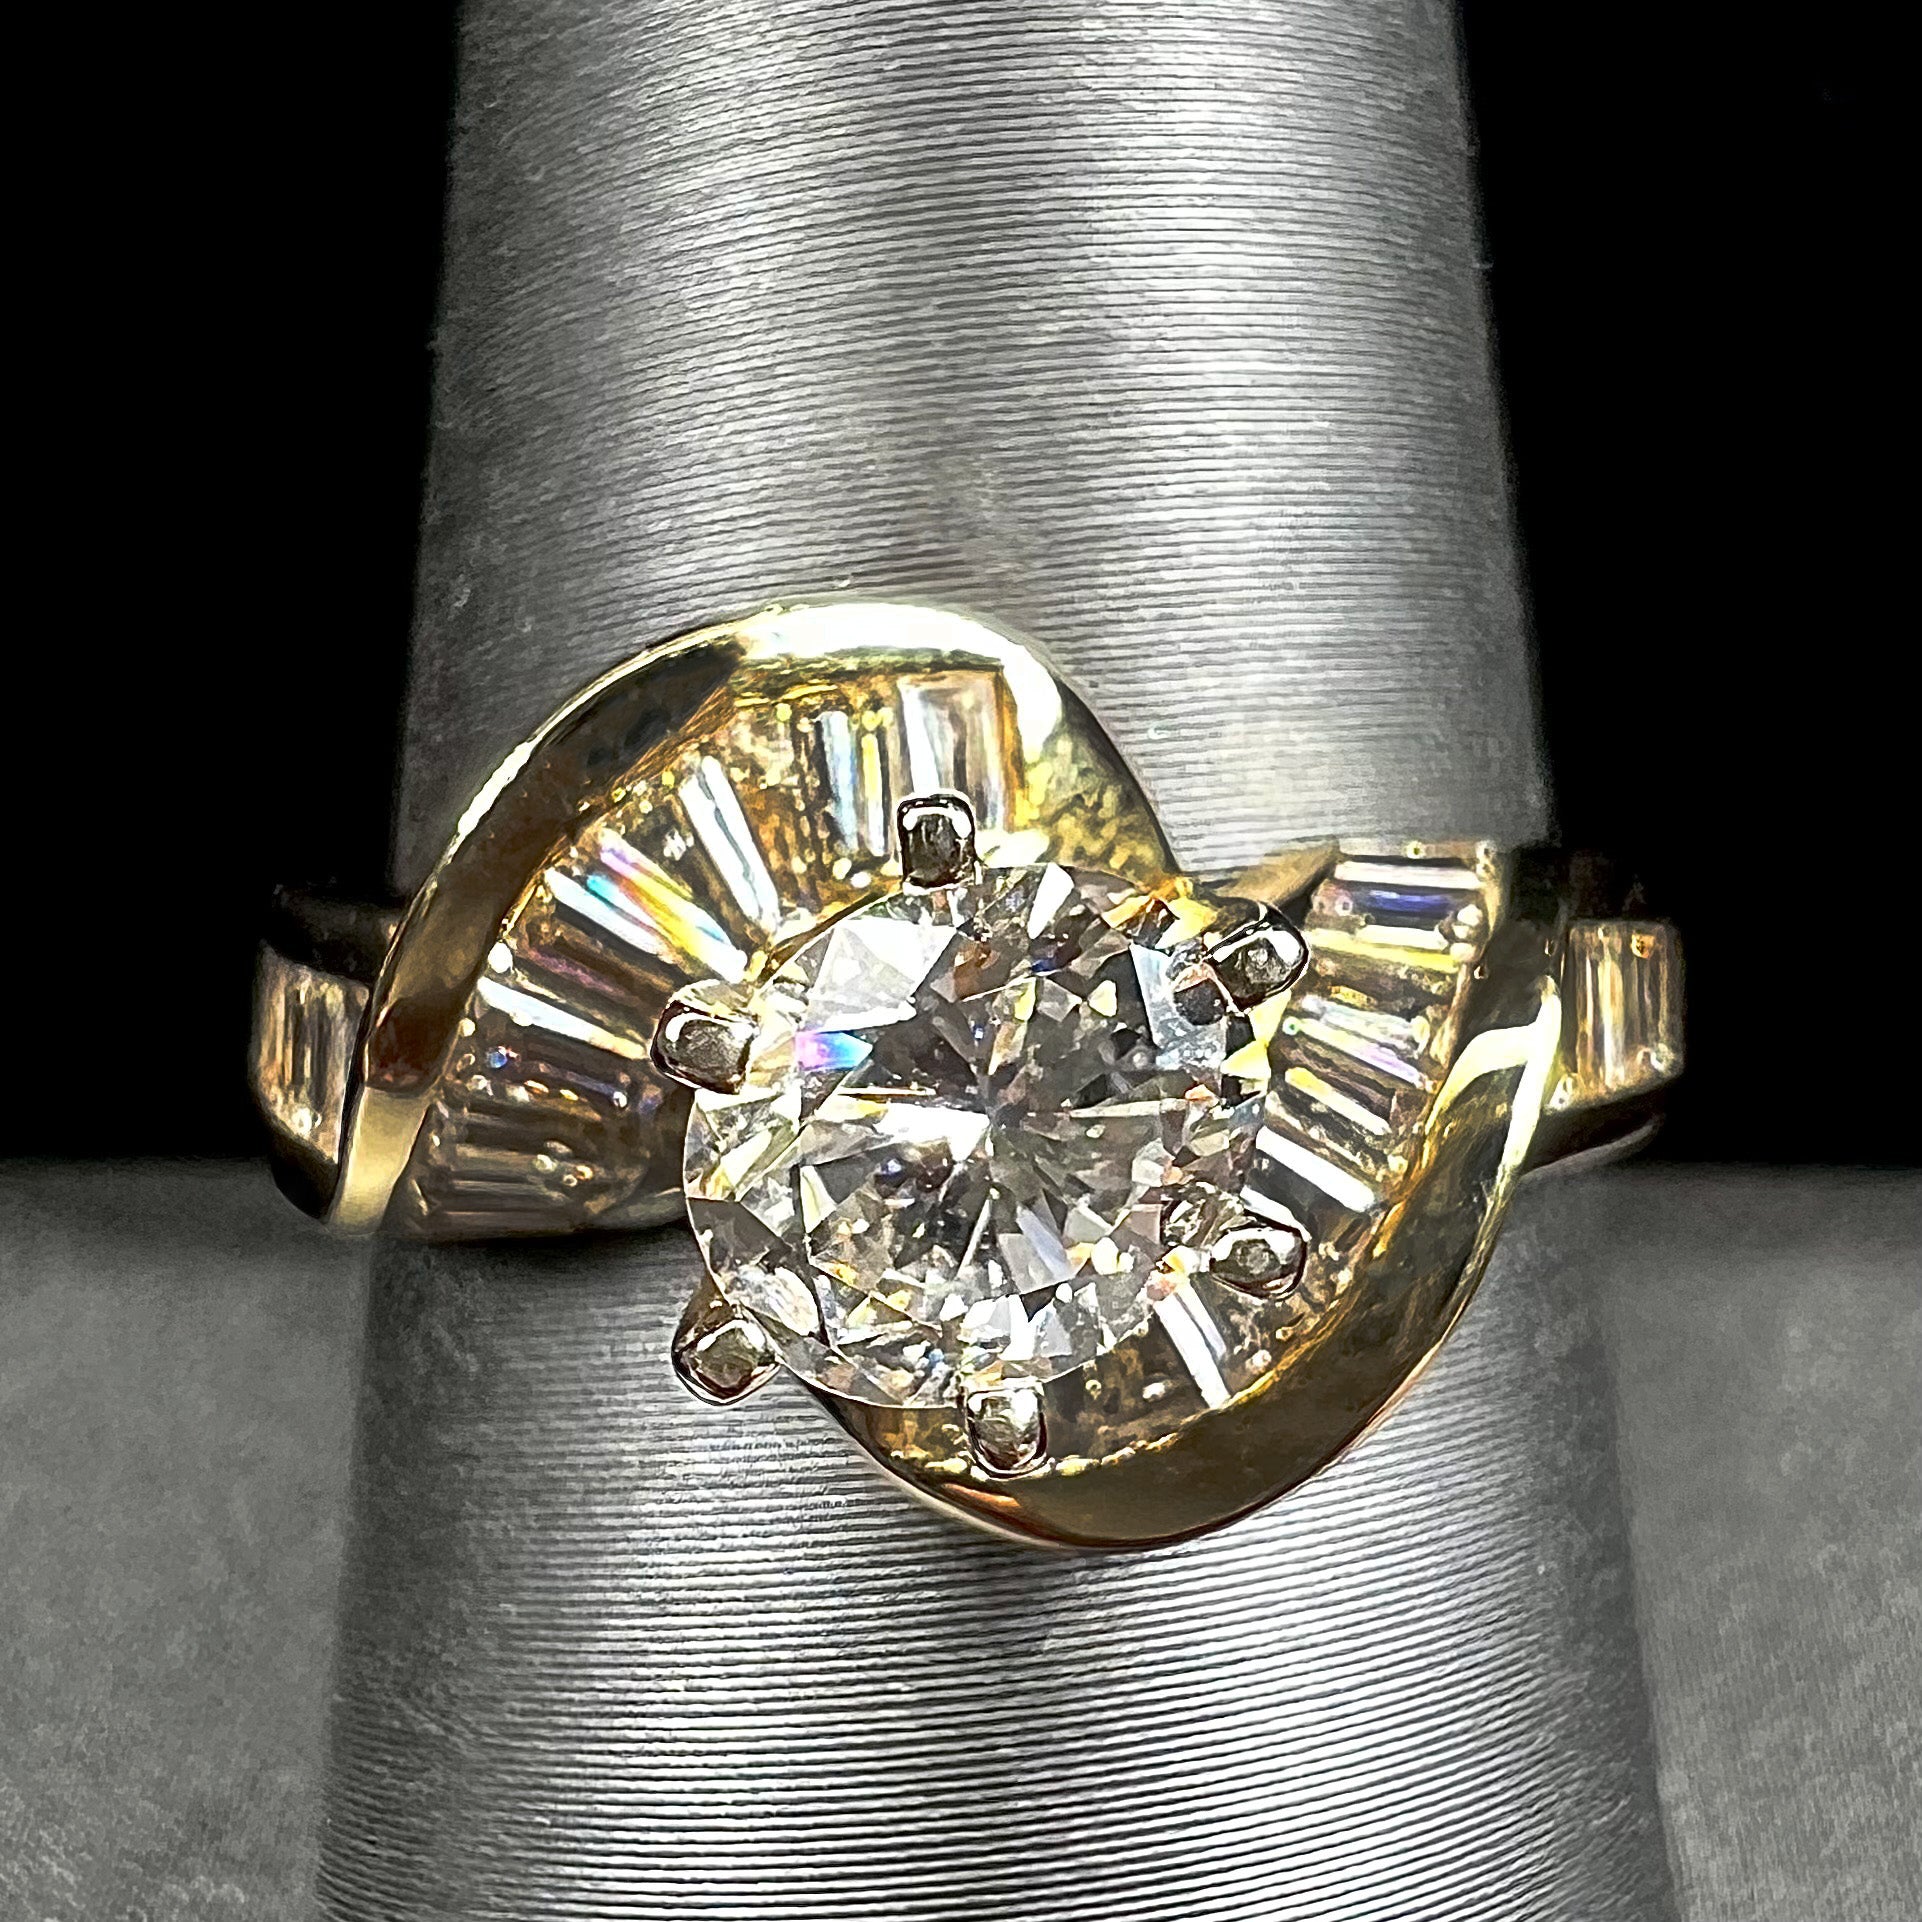 LADIES BRIDAL RING SET 1/2 CT ROUND DIAMOND 14K YELLOW GOLD | Angelucci  Jewelry